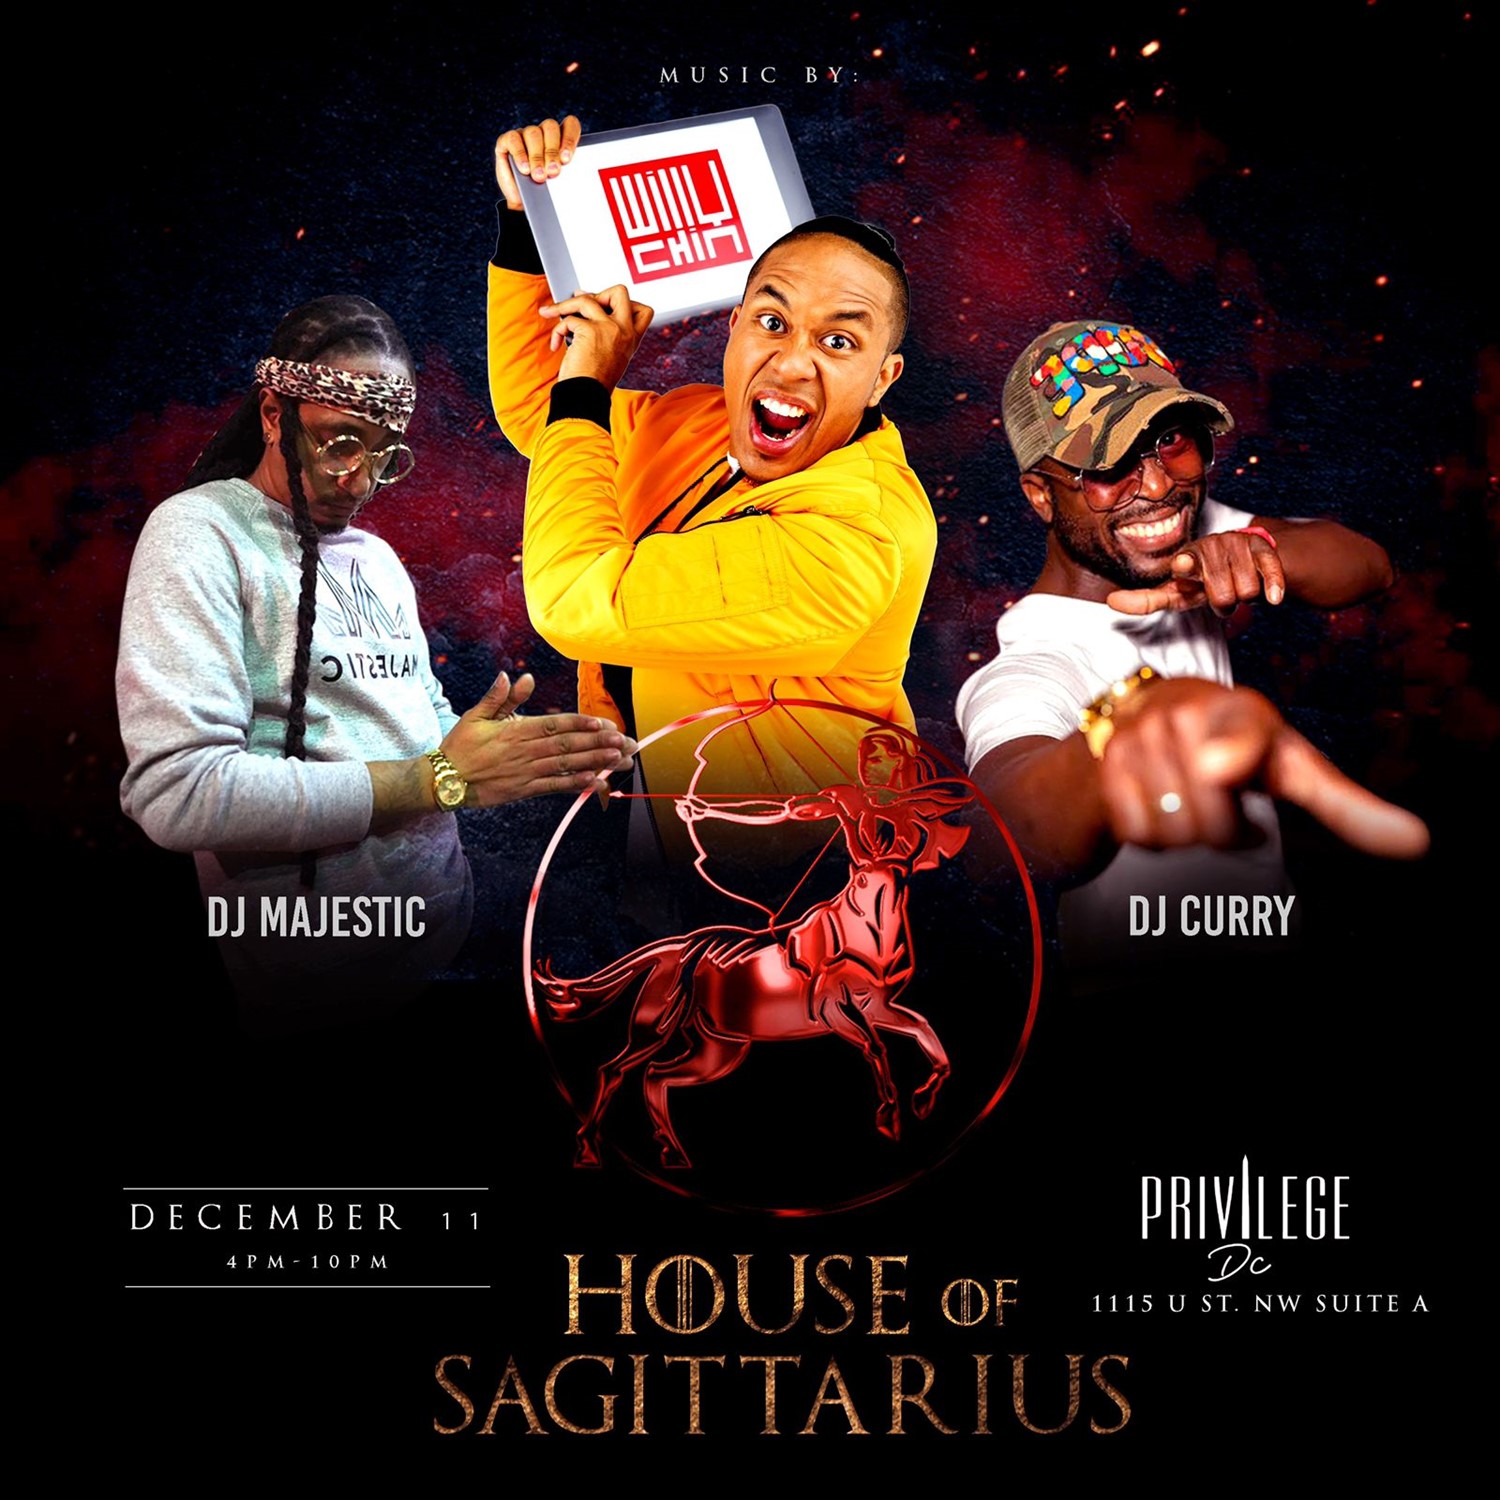 House of Sagittarius  on dic. 11, 16:00@Privilege Lounge - Compra entradas y obtén información enwww.fetefinders.com tickets.fetefinders.com